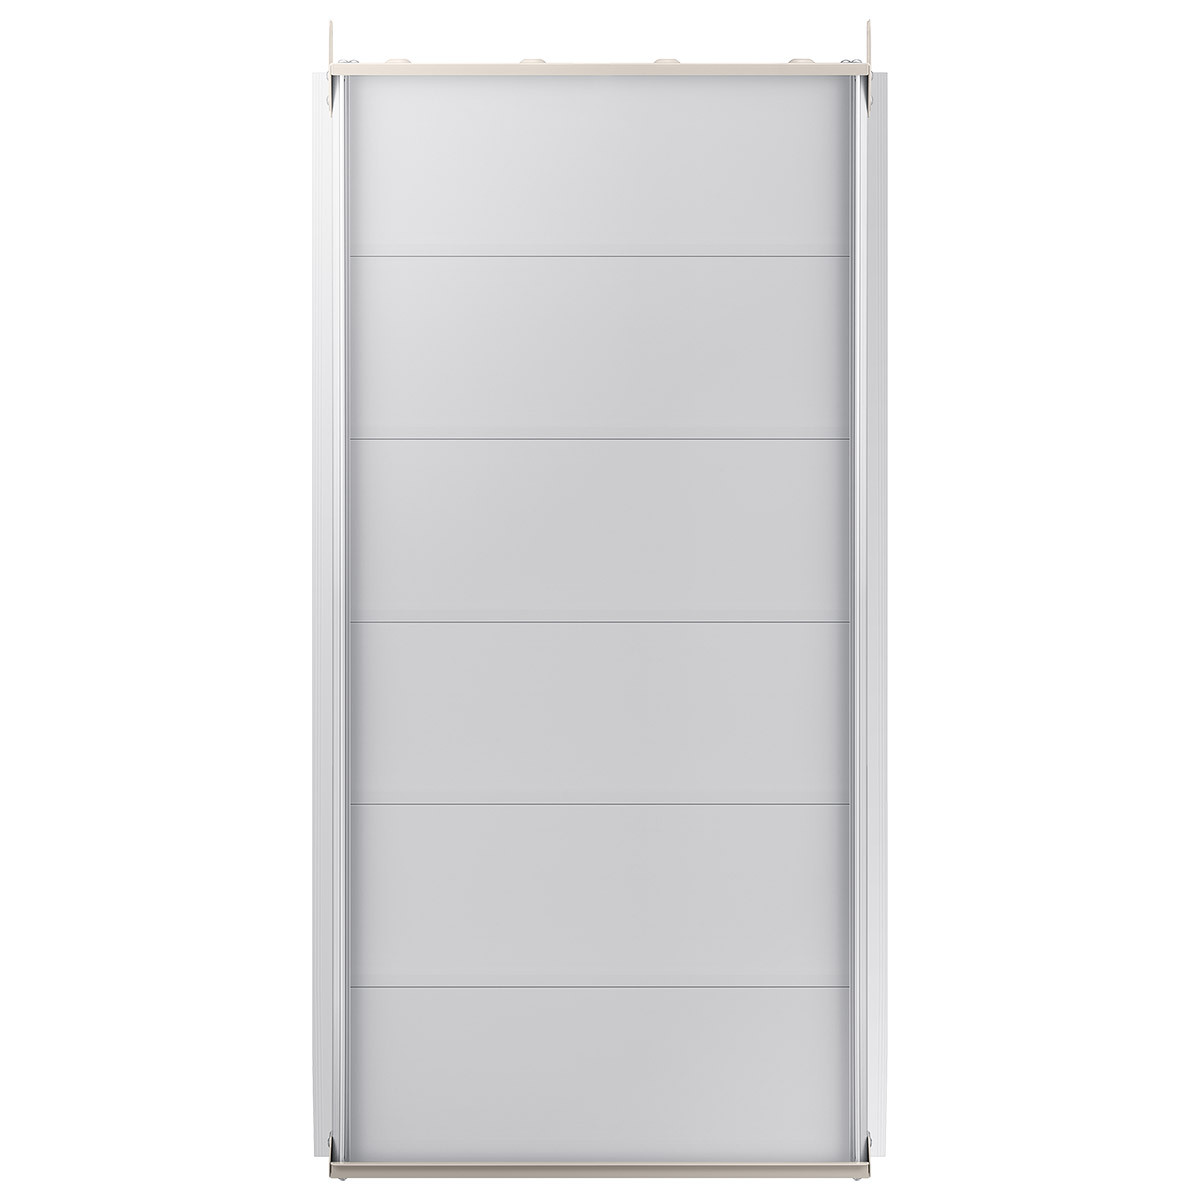 삼성 창문형 에어컨 (17㎡) + 길이연장키트 90cm